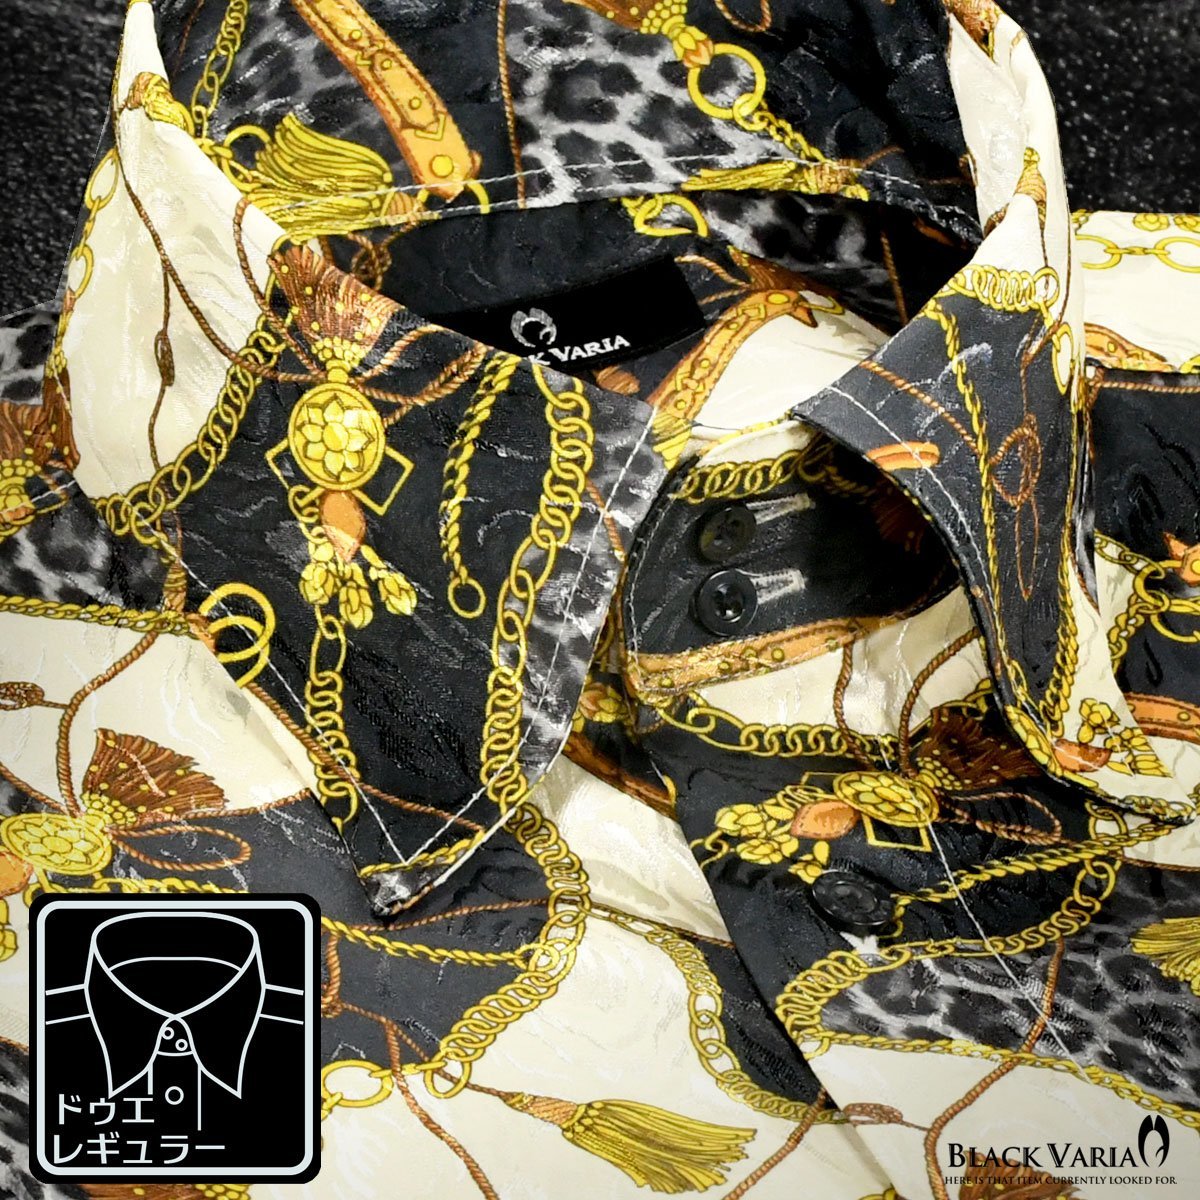 a181718-gobk BLACK VARIA ドゥエボットーニ 豹×鎖スカーフ柄[レギュラーカラー]ジャガードドレスシャツ メンズ(ゴールド金ブラック黒) L